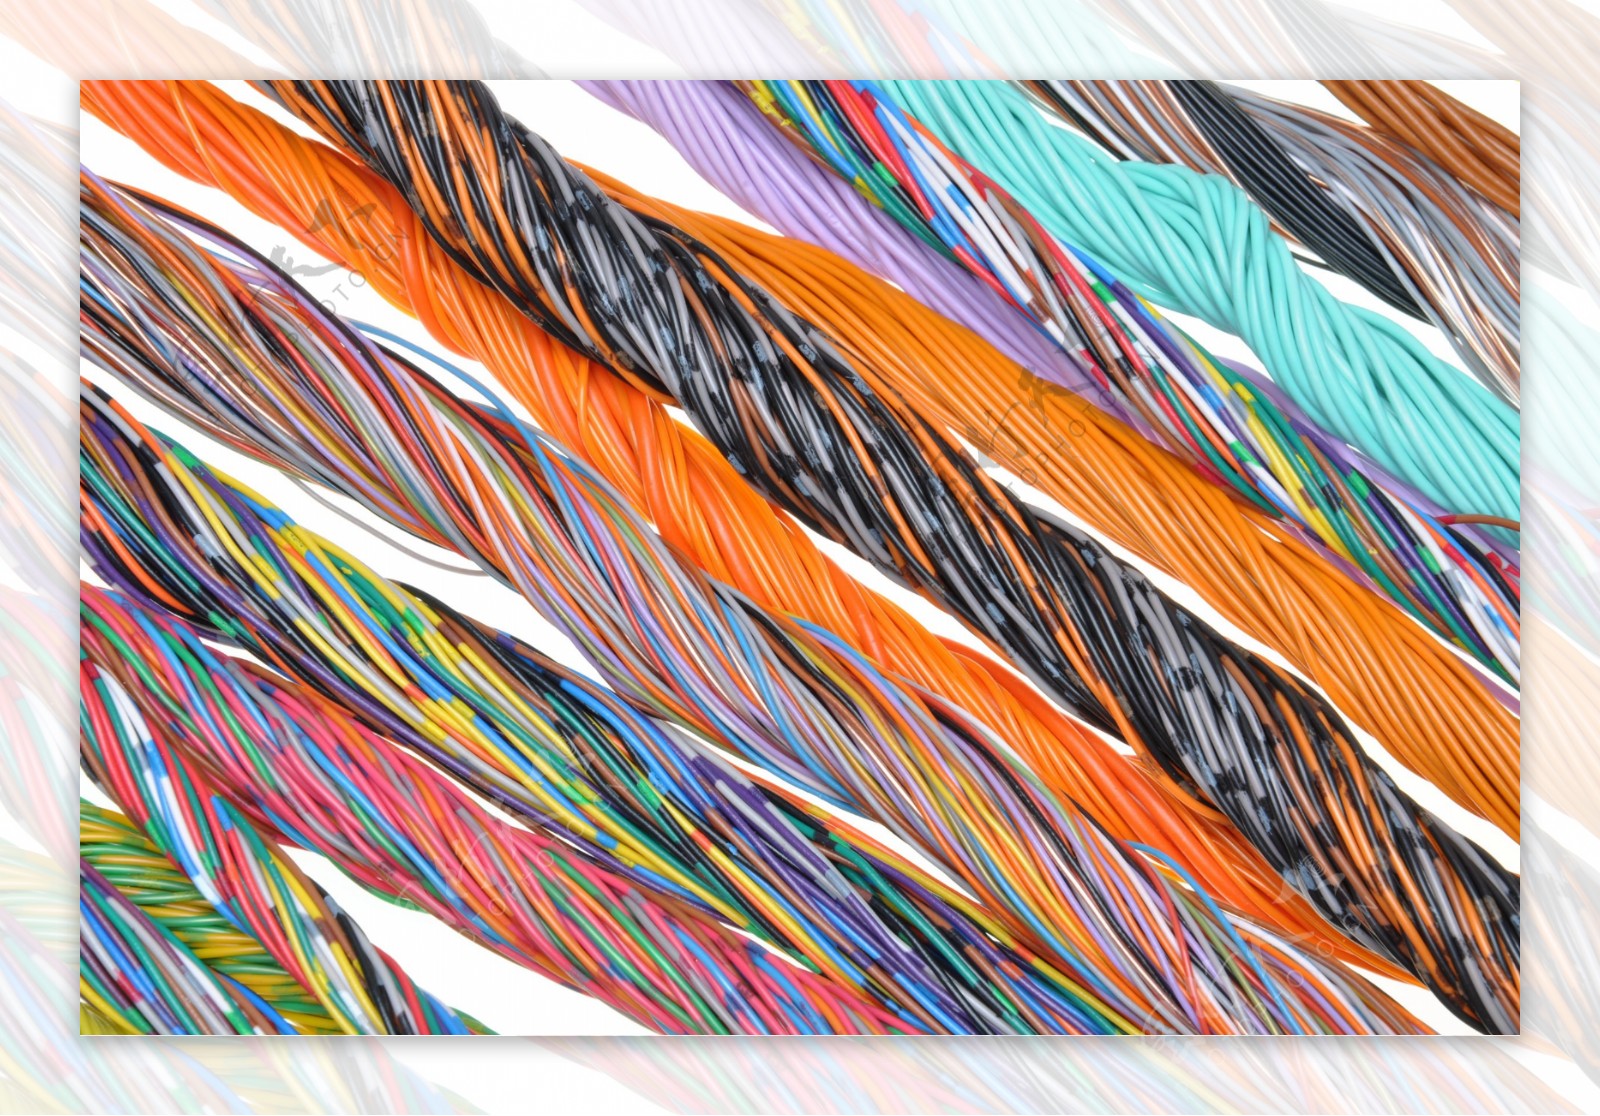 彩色计算机电缆线图片